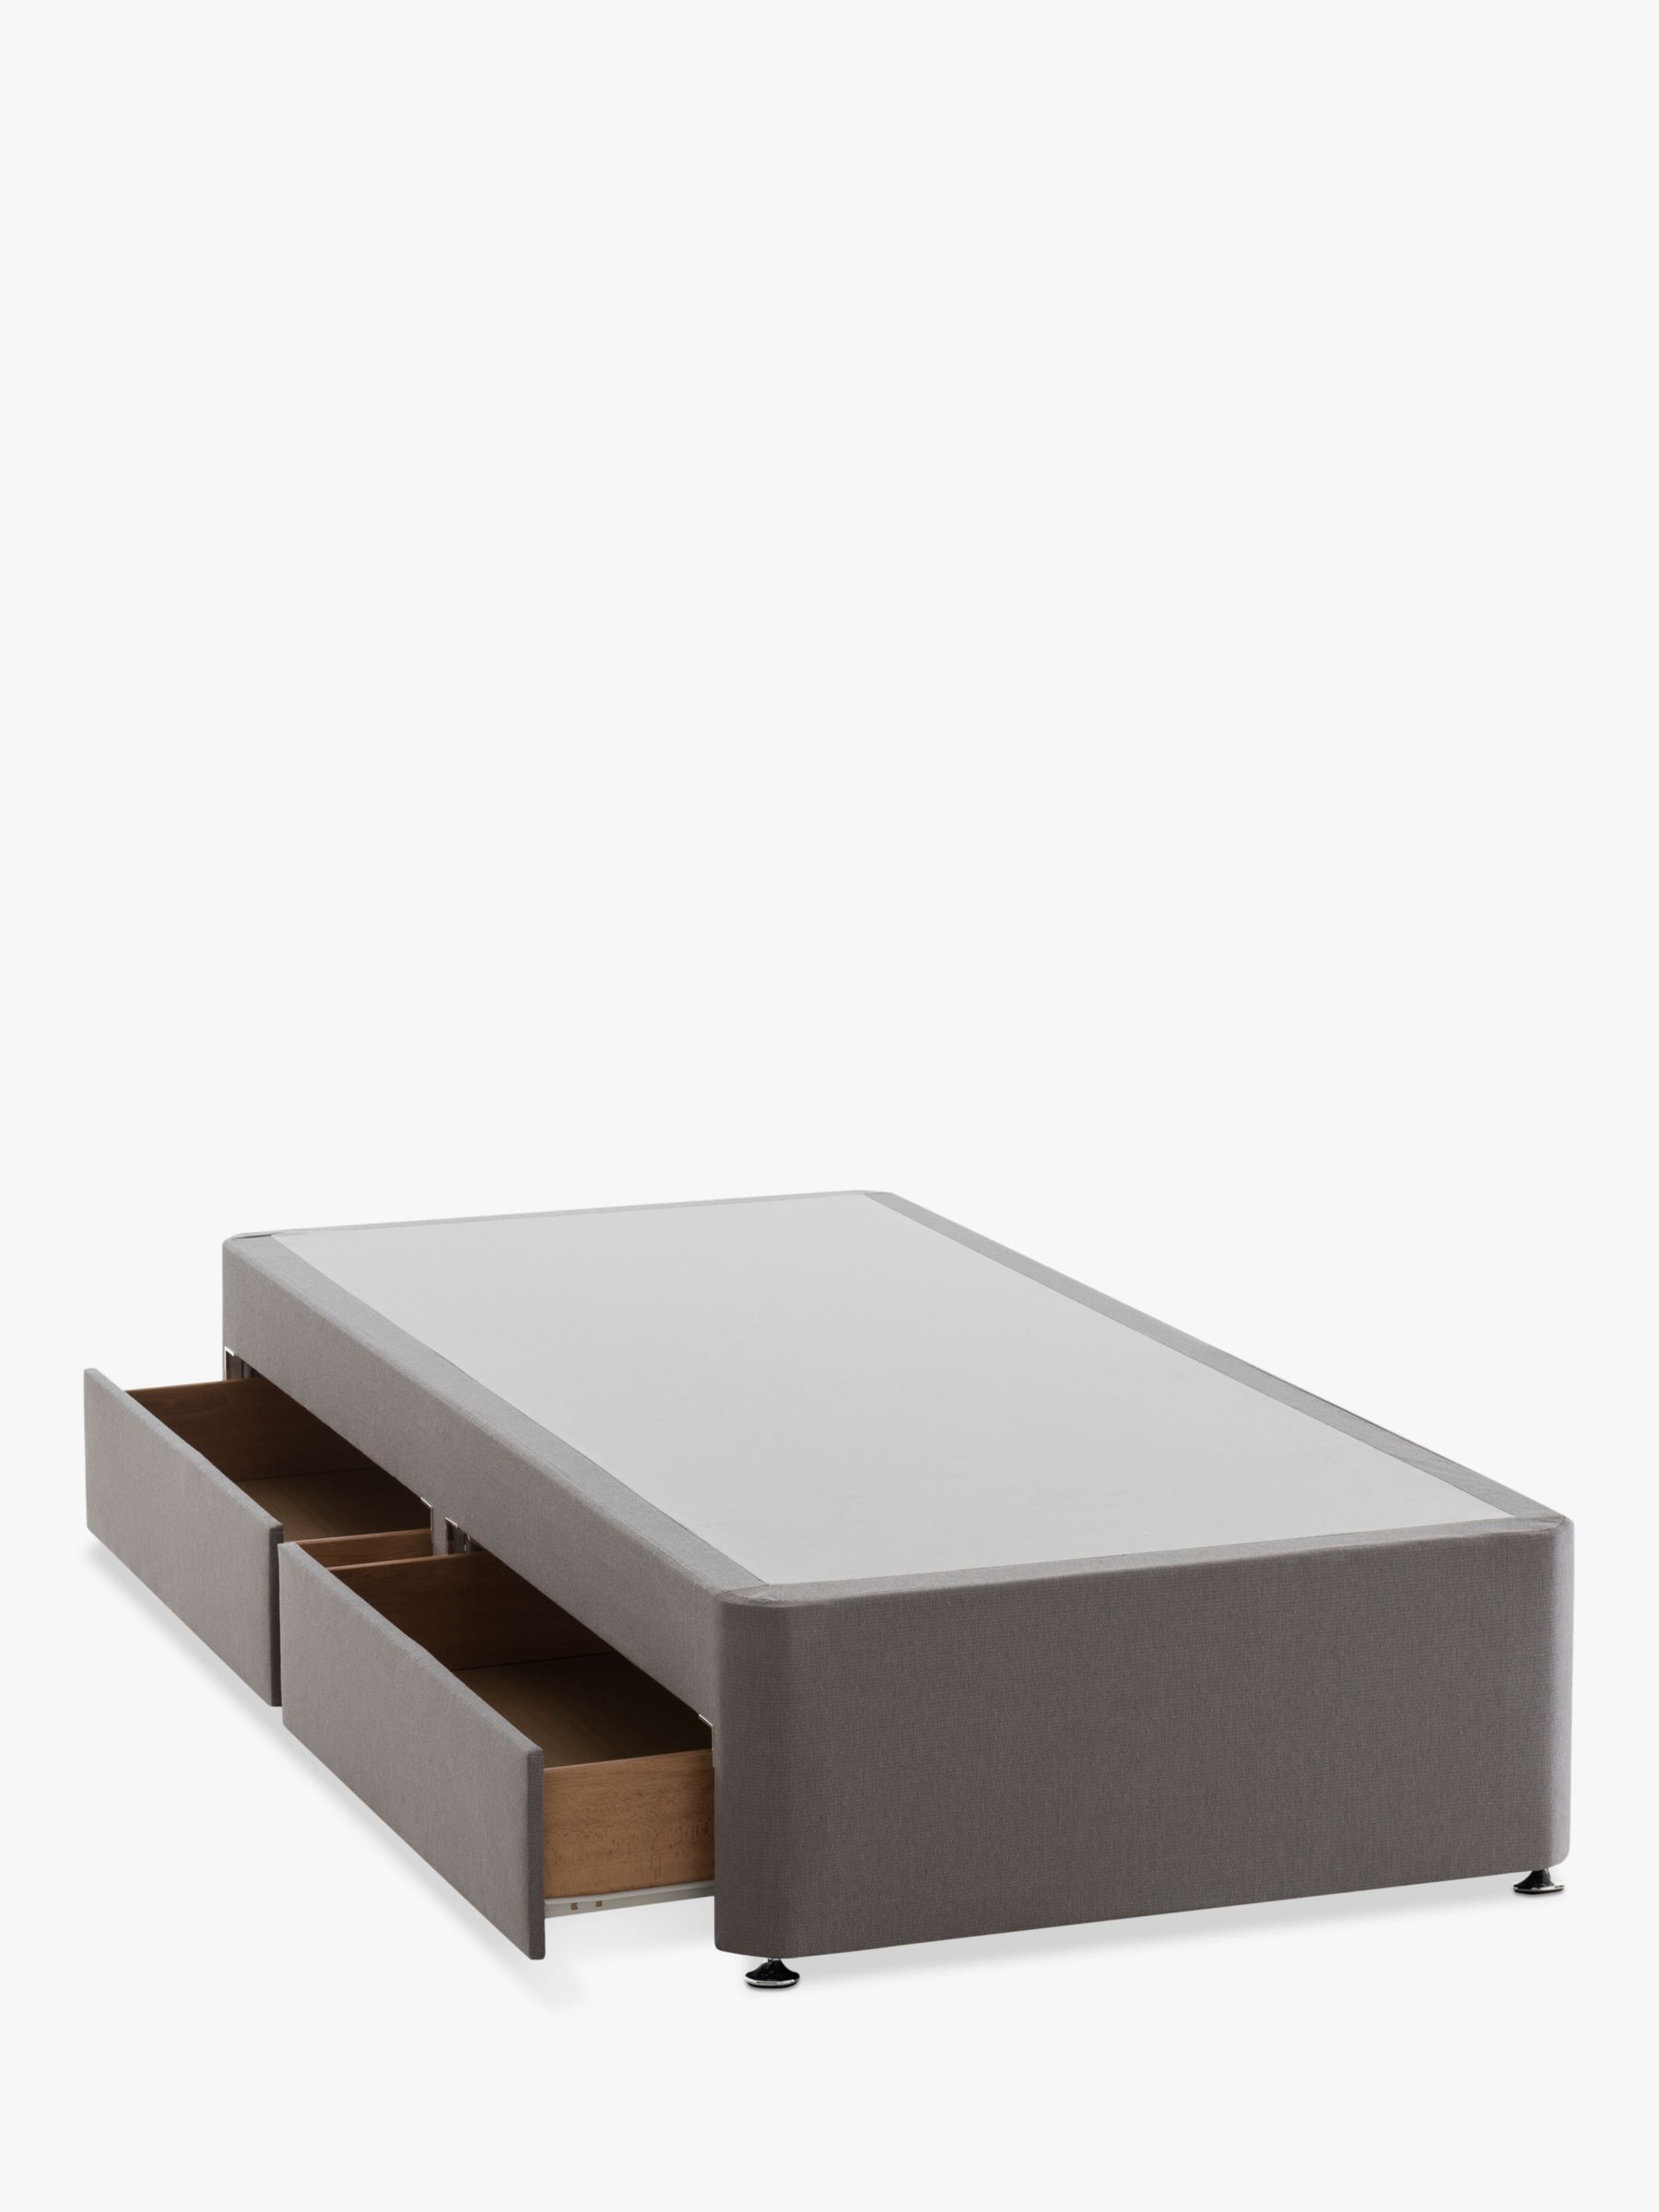 Photo of Silentnight non sprung 2 drawer divan storage bed single